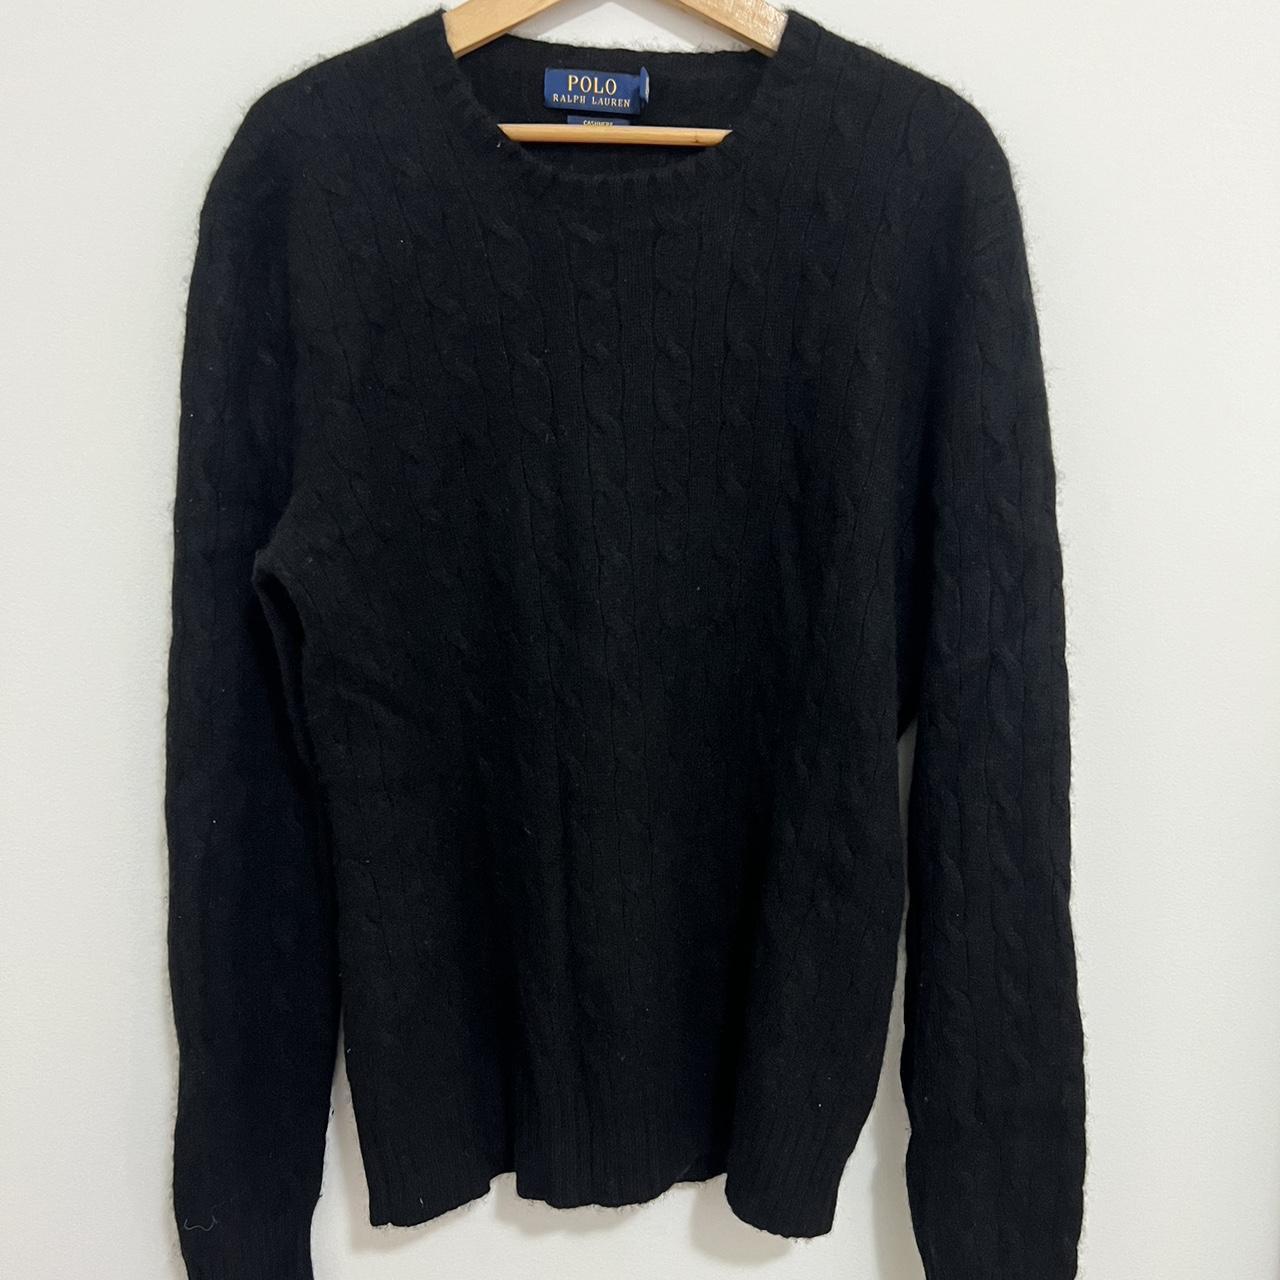 Polo Ralph Lauren Black Cashmere Sweater Men’s Size... - Depop